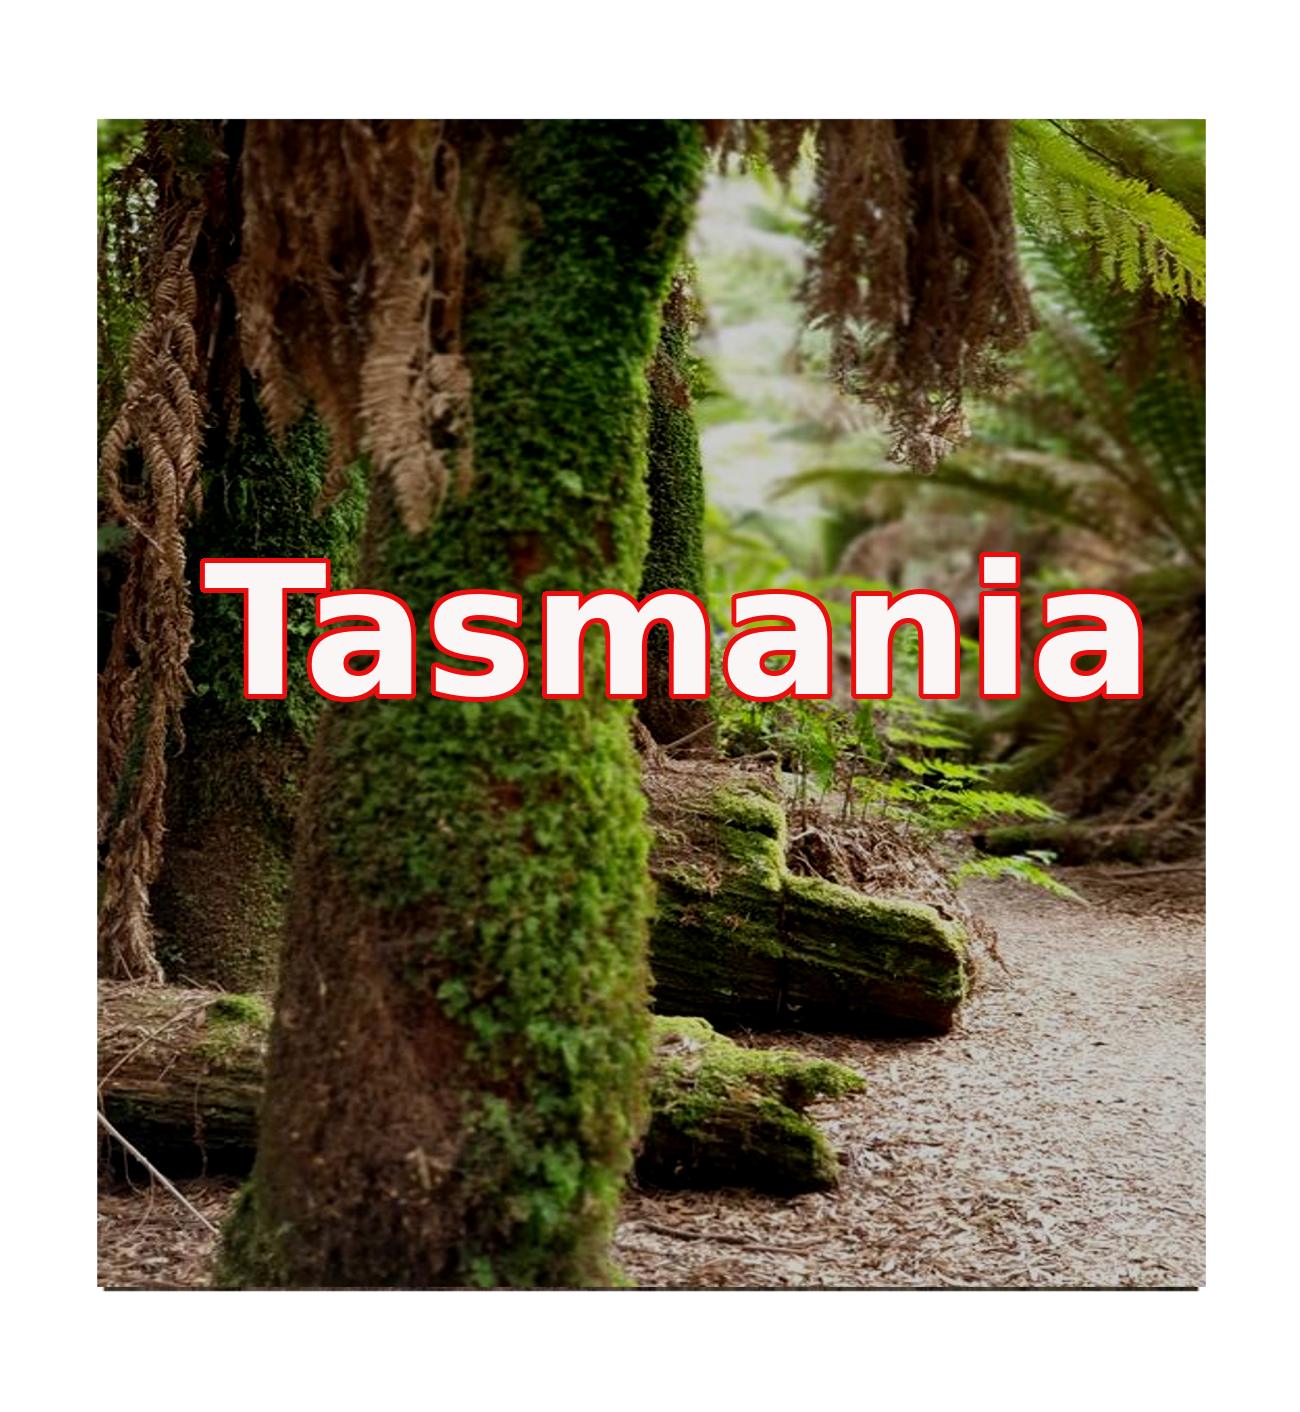 Tasmania navigation large